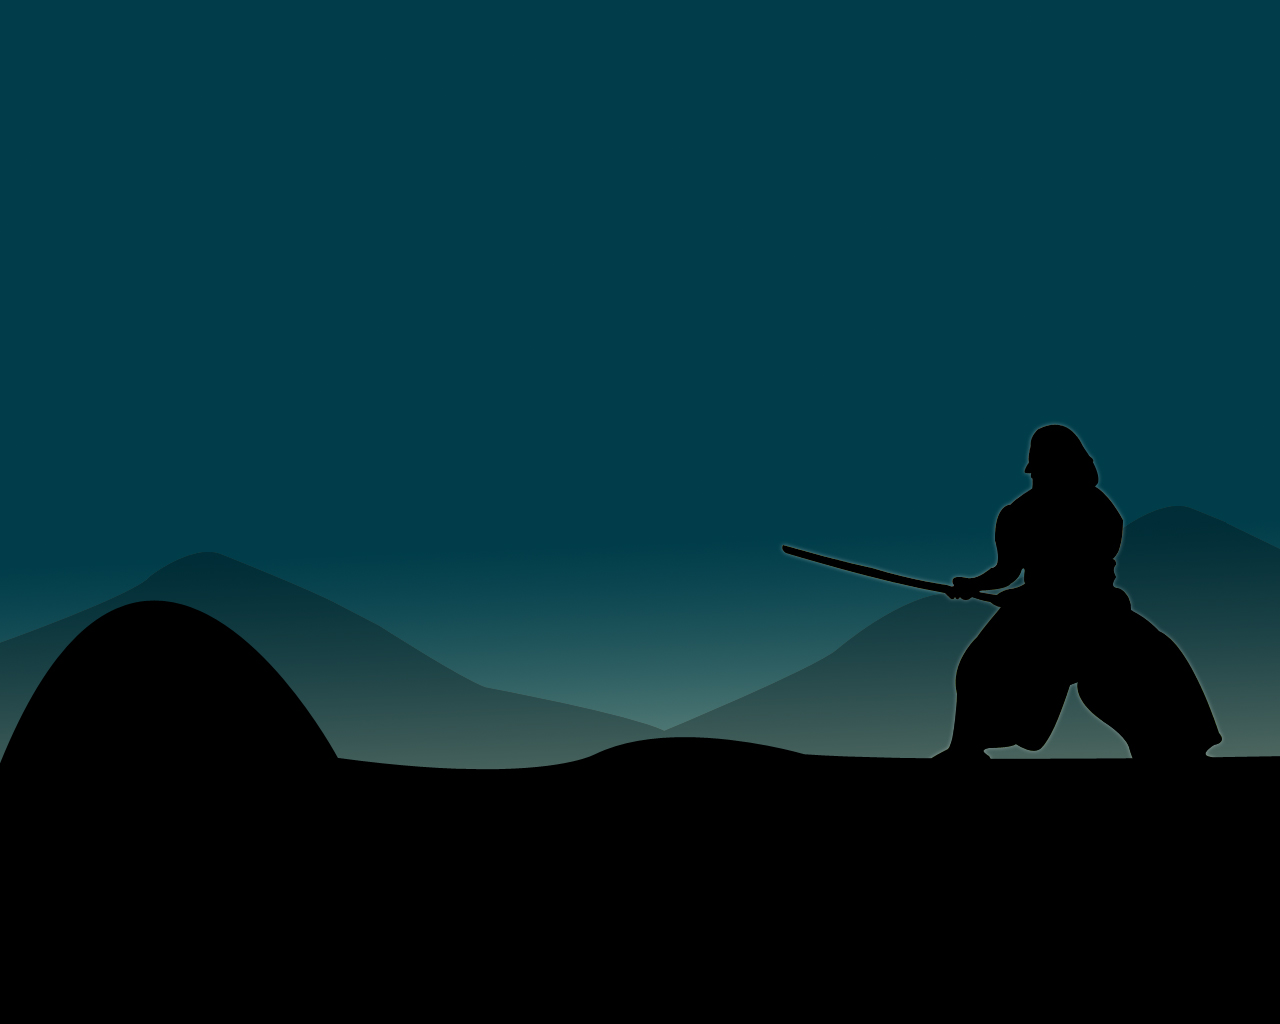 The Last Samurai by Capital18 on